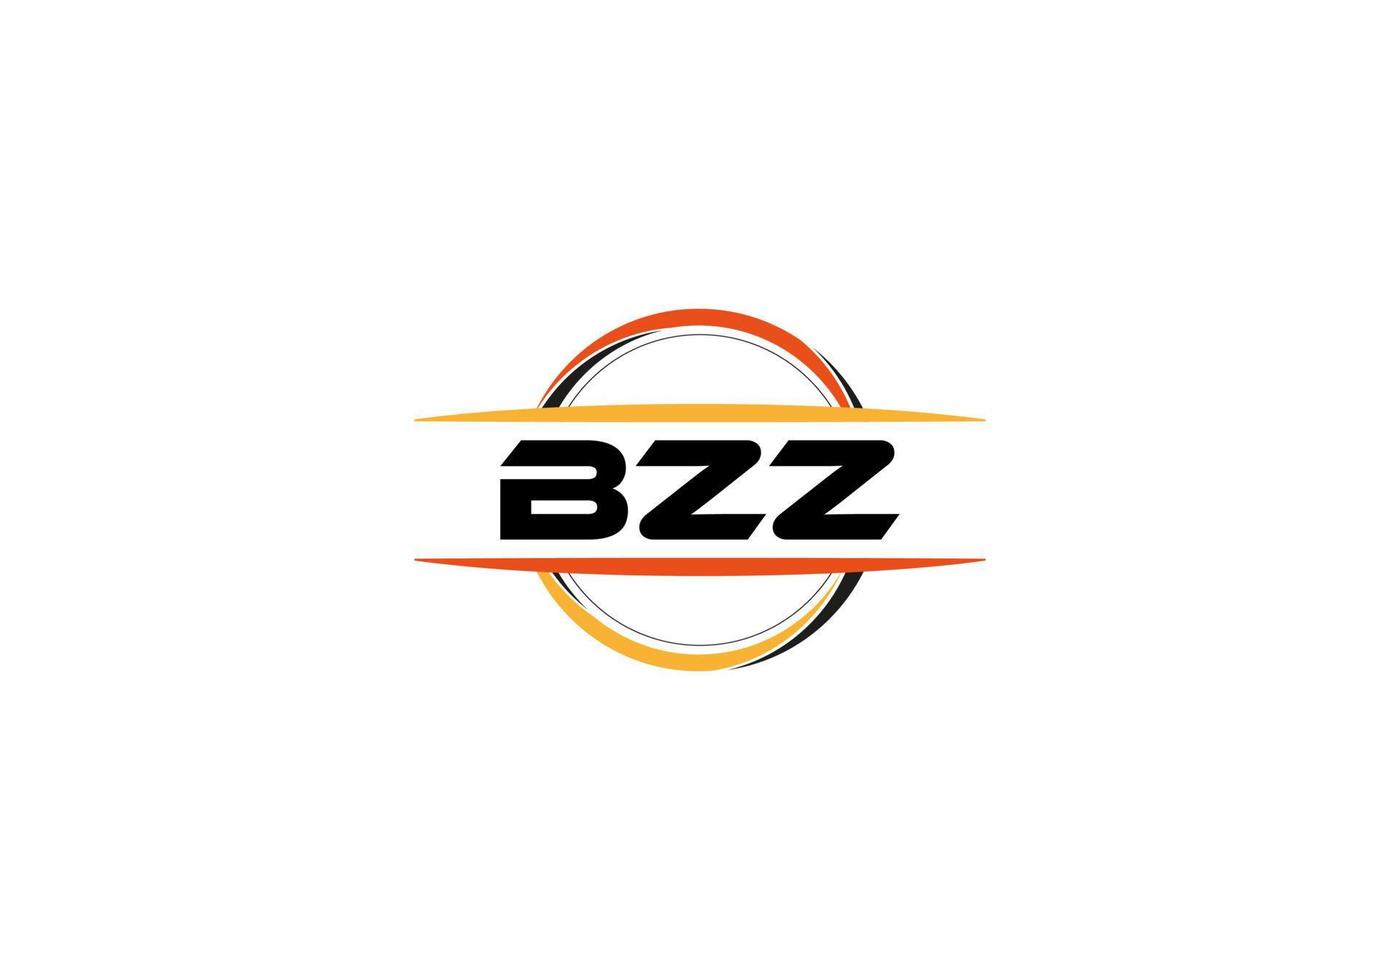 bzz-Buchstaben-Lizenzgebühren-Mandala-Form-Logo. bzz-Pinsel-Kunst-Logo. bzz-Logo für ein Unternehmen, ein Geschäft und eine kommerzielle Nutzung. vektor